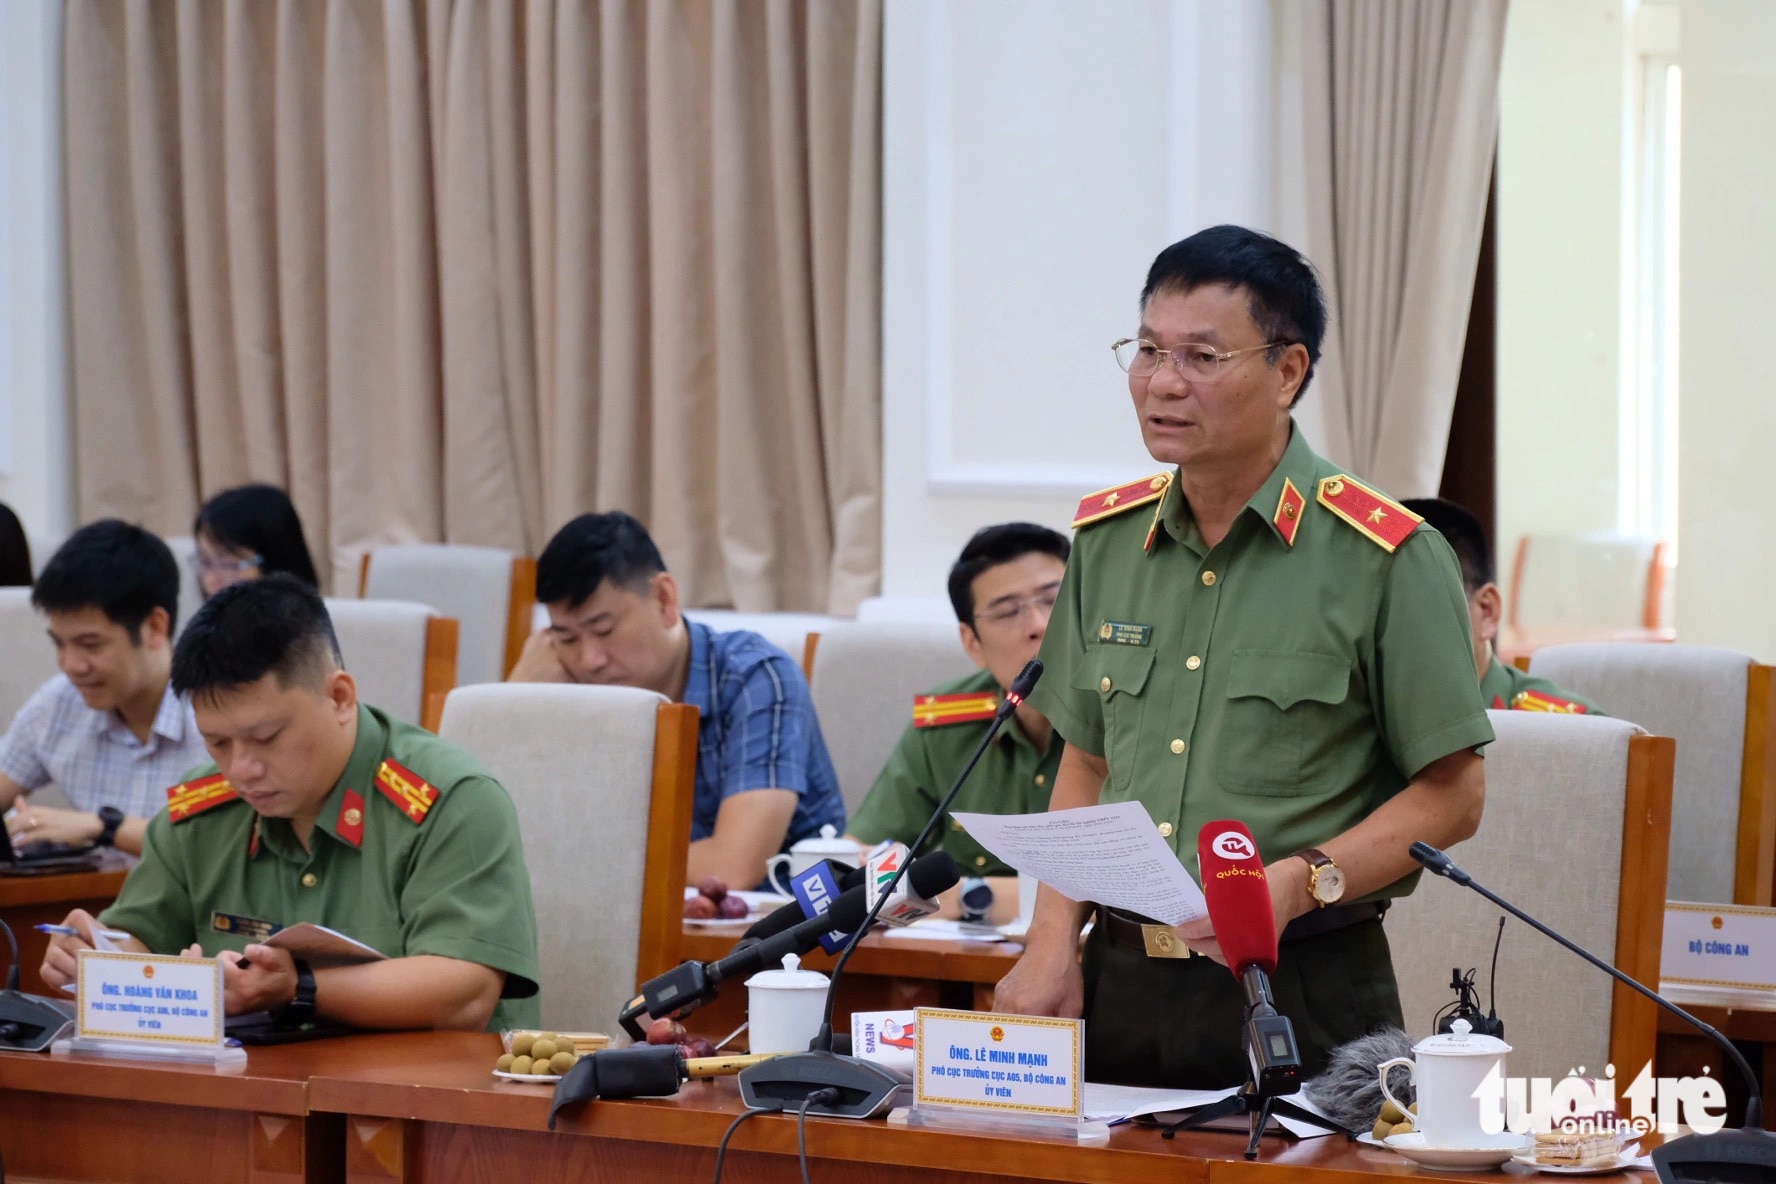 Thiếu tướng Lê Minh Mạnh, phó cục trưởng Cục A05, Bộ Công an, trao đổi tại hội nghị - Ảnh: NGUYÊN BẢO